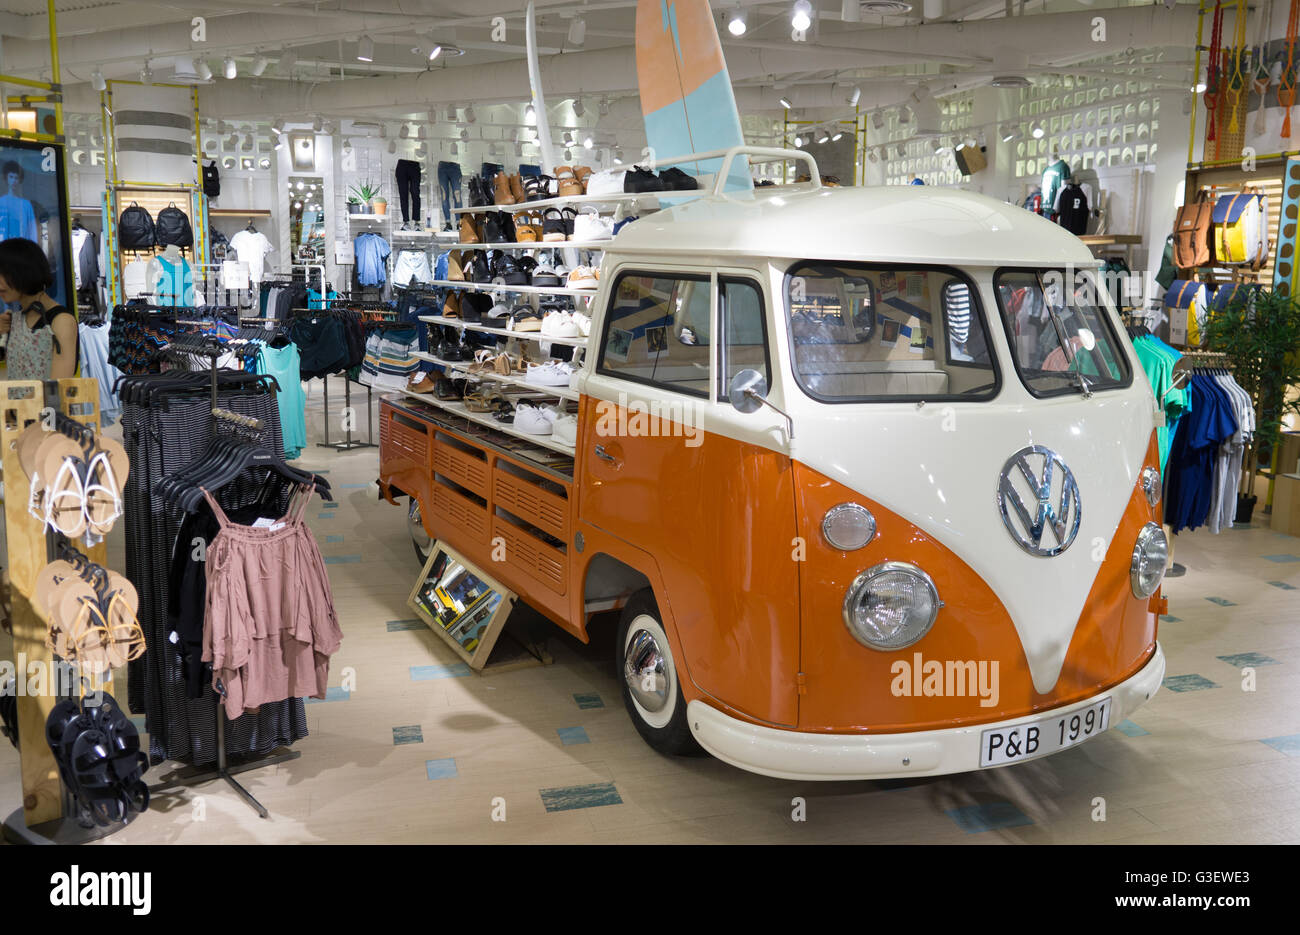 A Classic Volkswagen Camper Van used in 